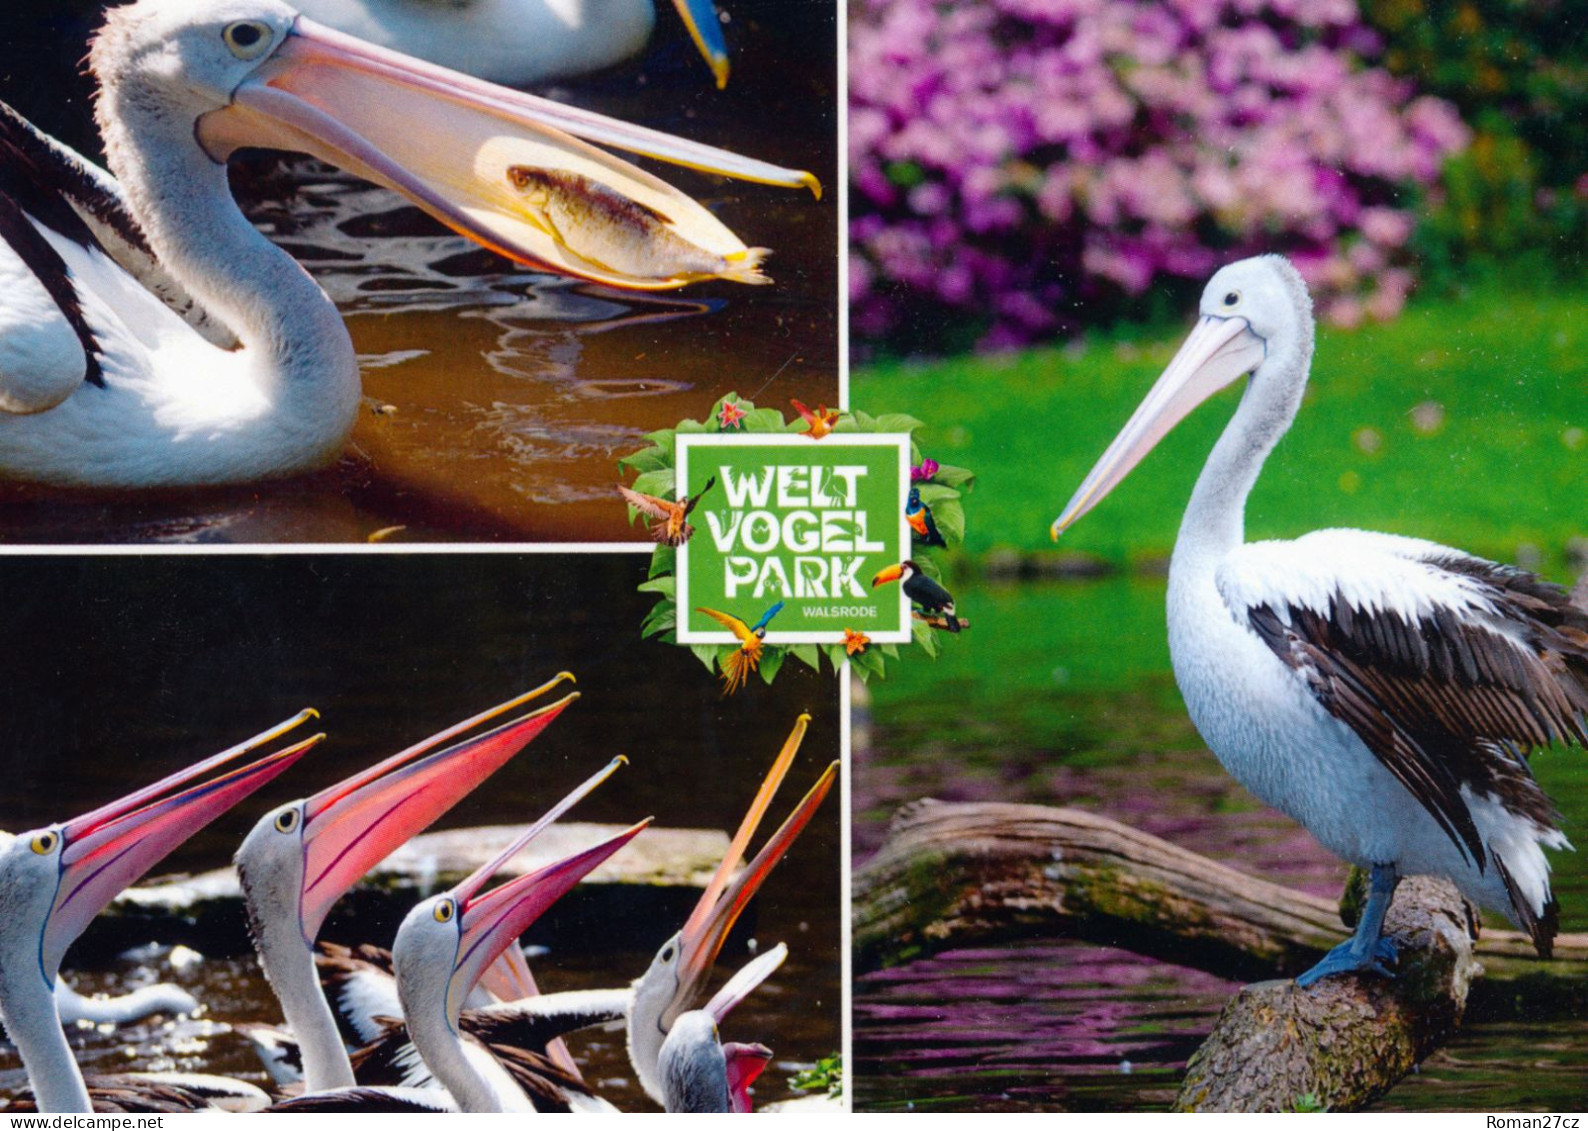 Vogelpark Walsrode (Bird Park), Germany - Pelican - Walsrode